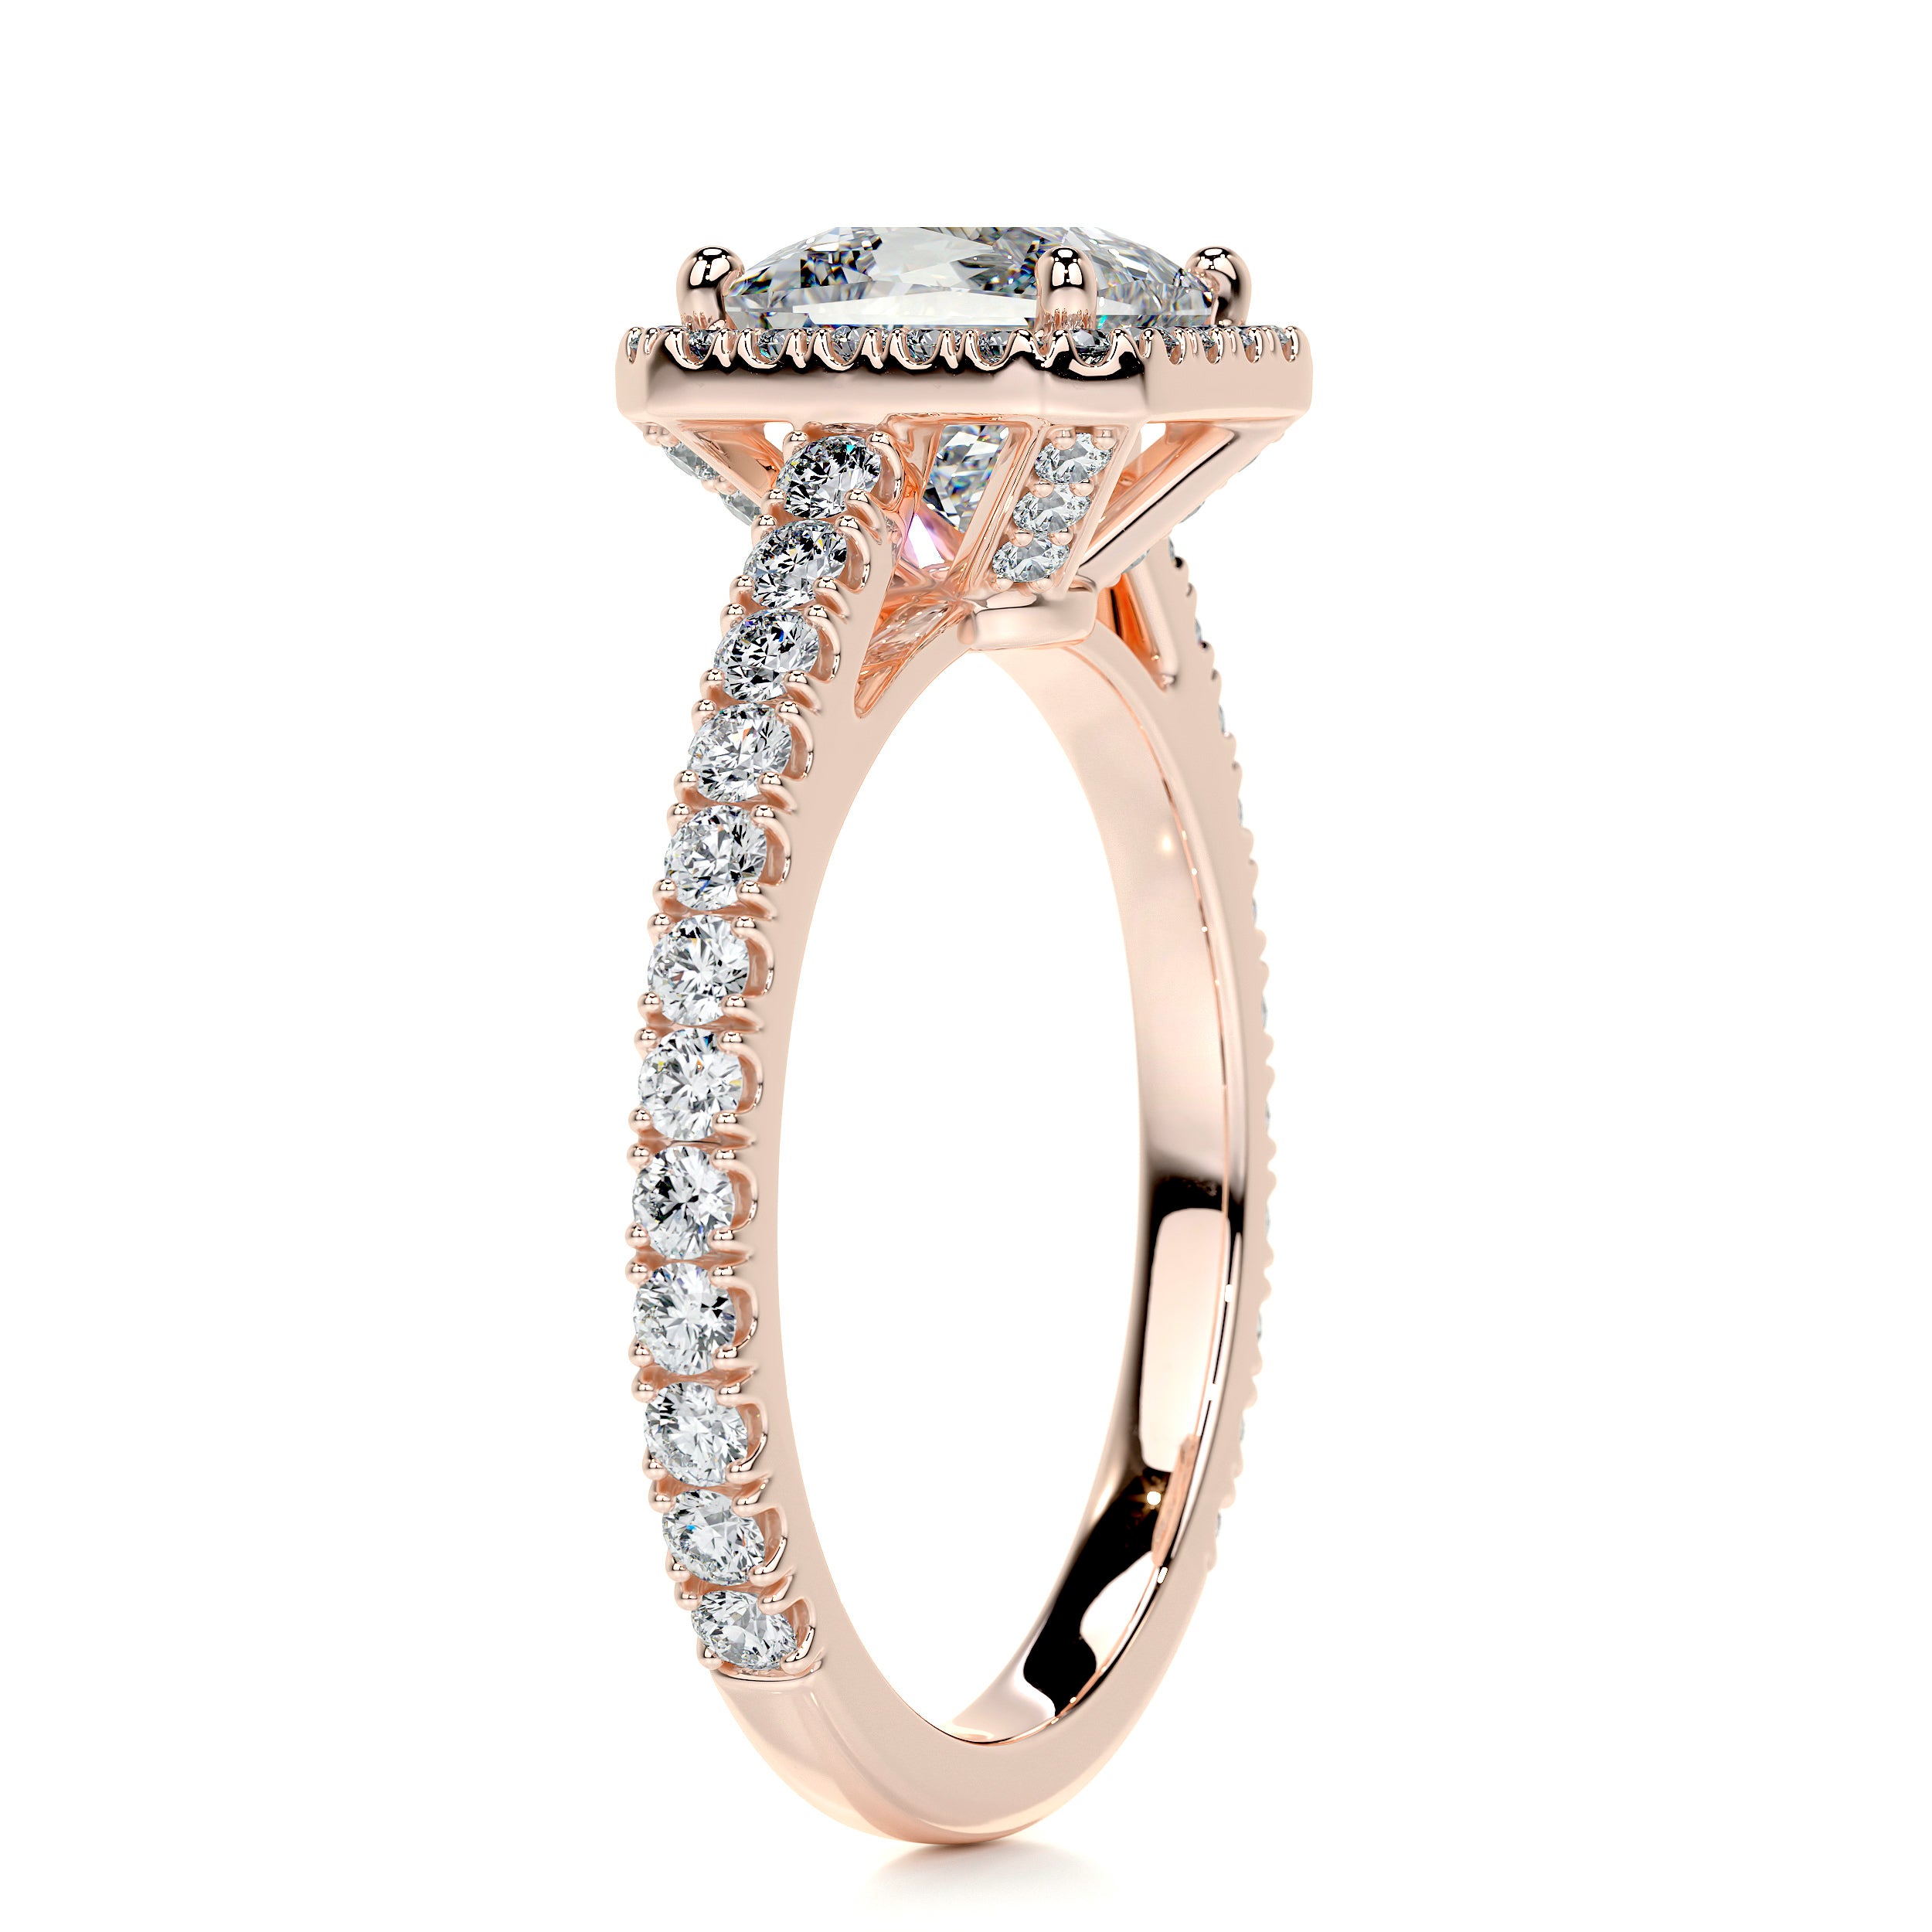 Selena Diamond Engagement Ring   (1.5 Carat) -14K Rose Gold